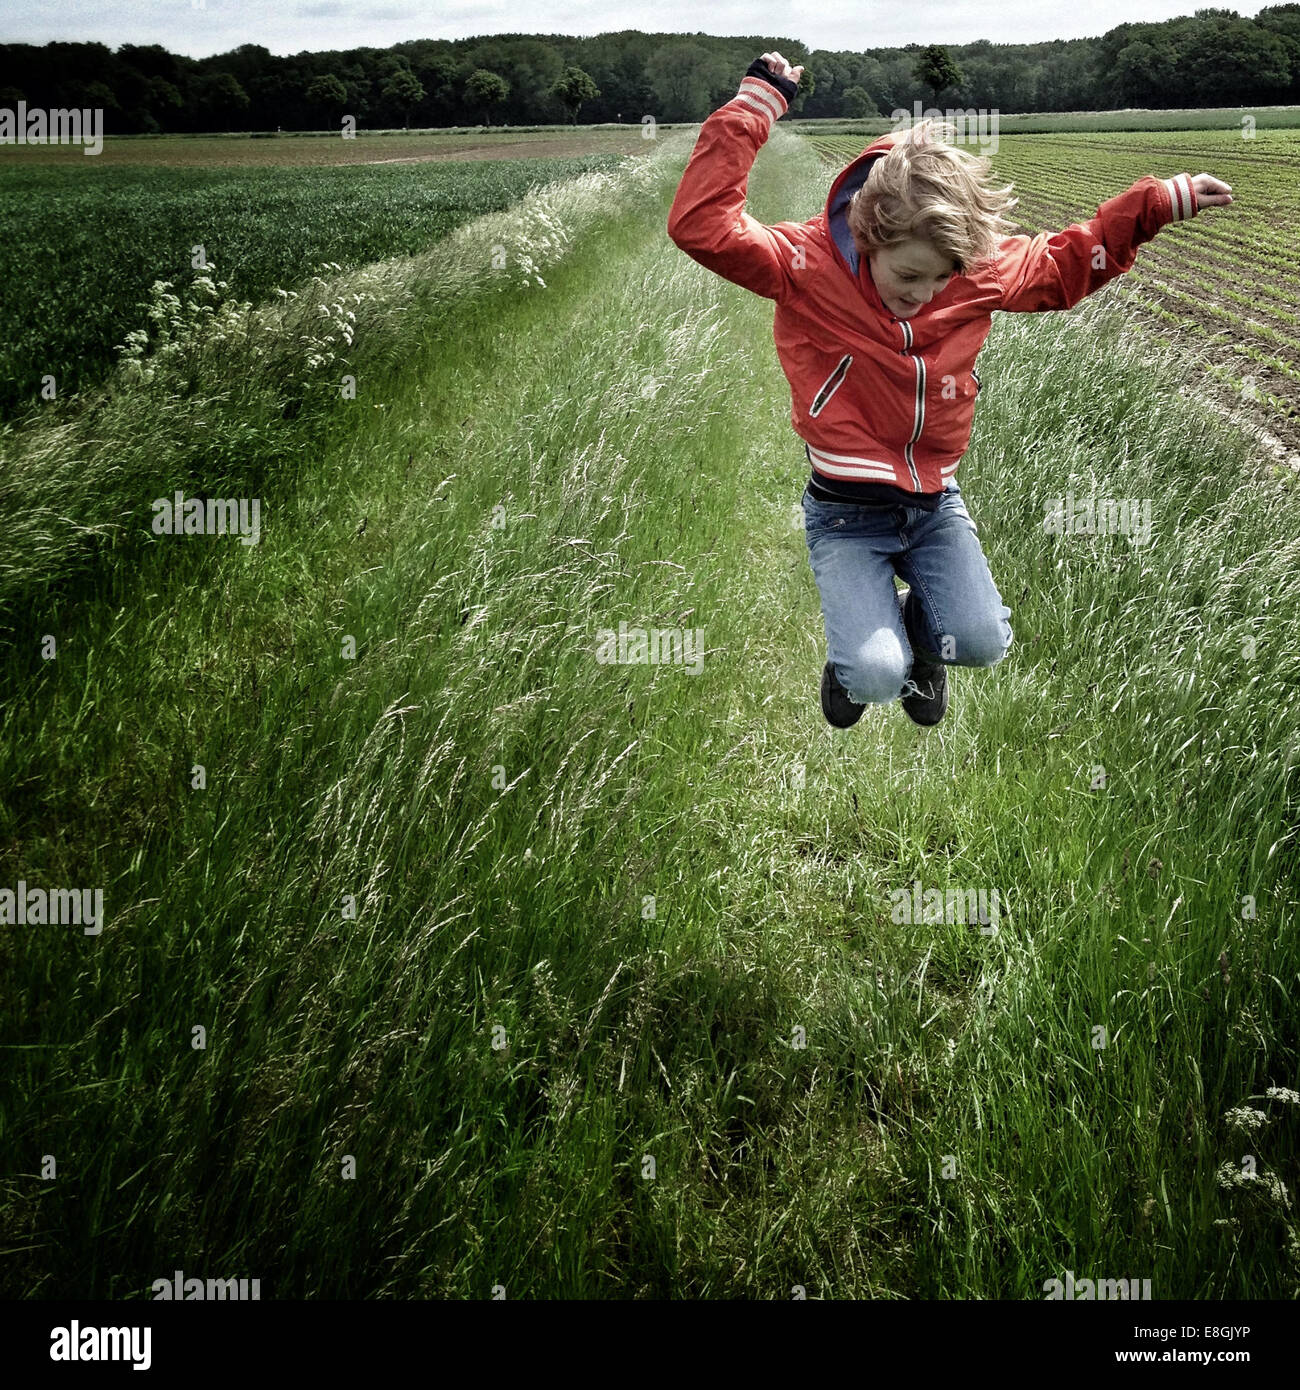 Ragazzo saltando in un campo, Germania Foto Stock